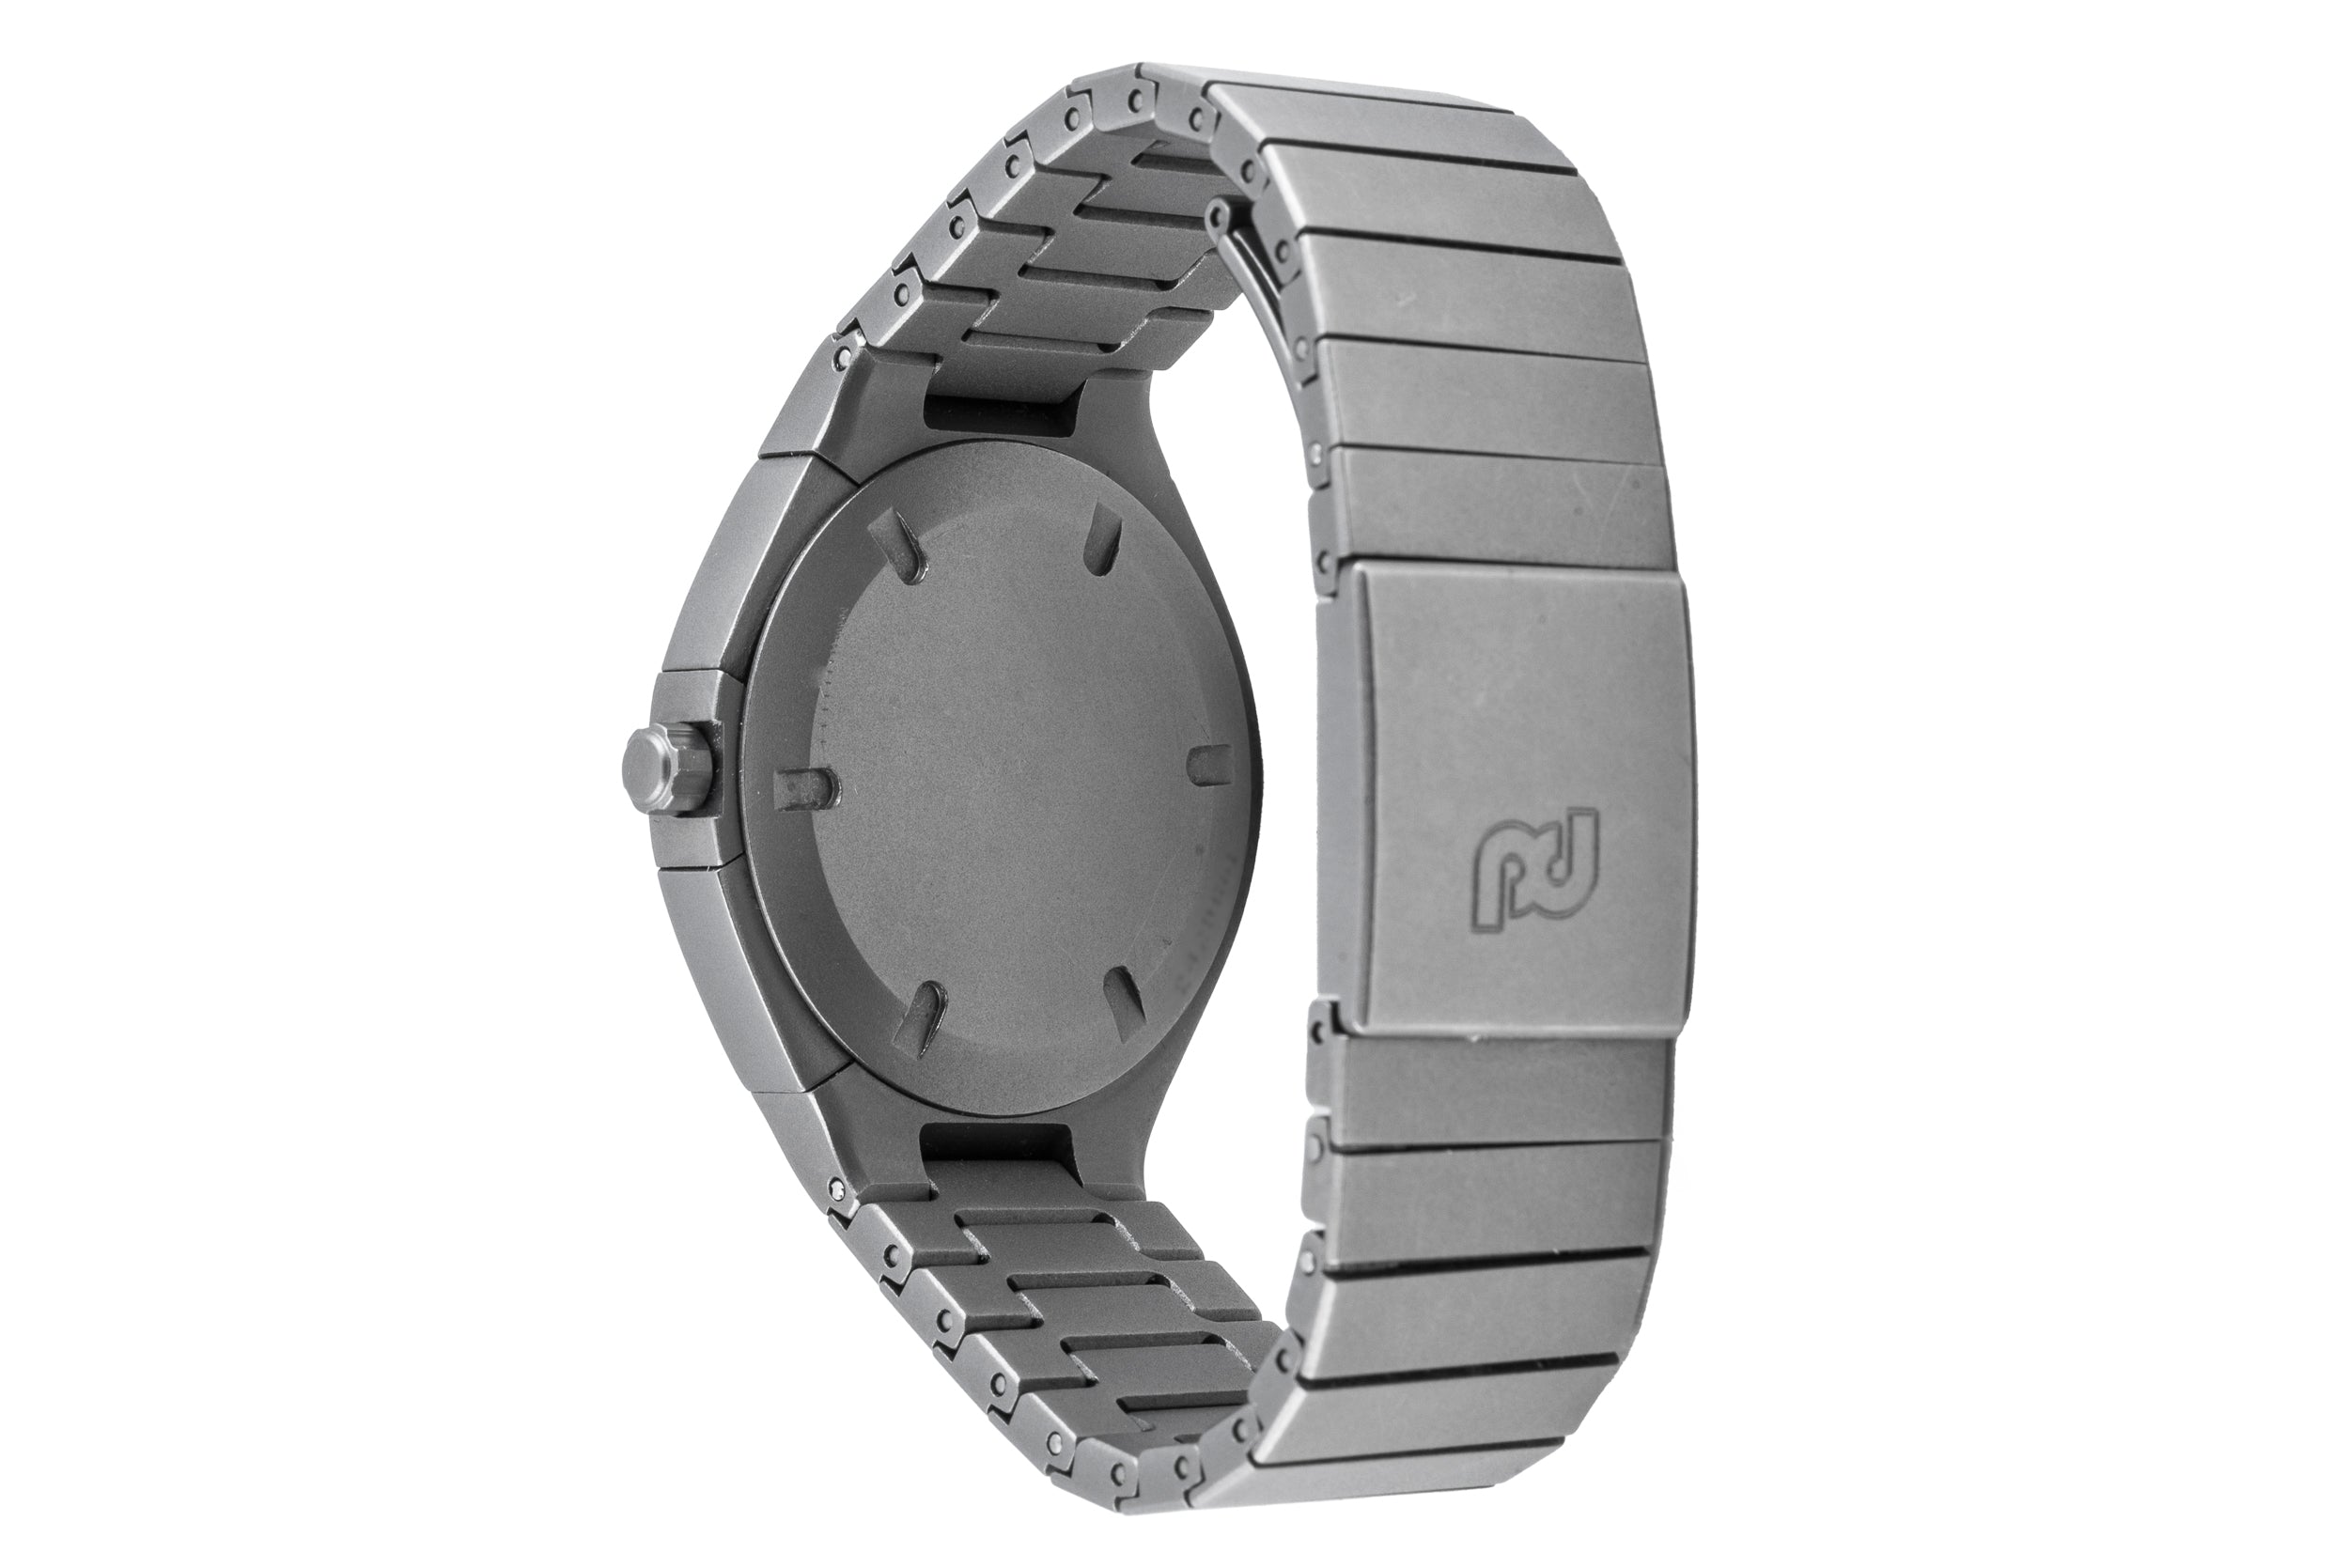 http://www.worldwatchreview.com/wp-content/uploads/2009/08/porsche-design-flat-six-p-6340-chronograph-w…  | Stainless steel bracelet, Watches for men, Porsche design